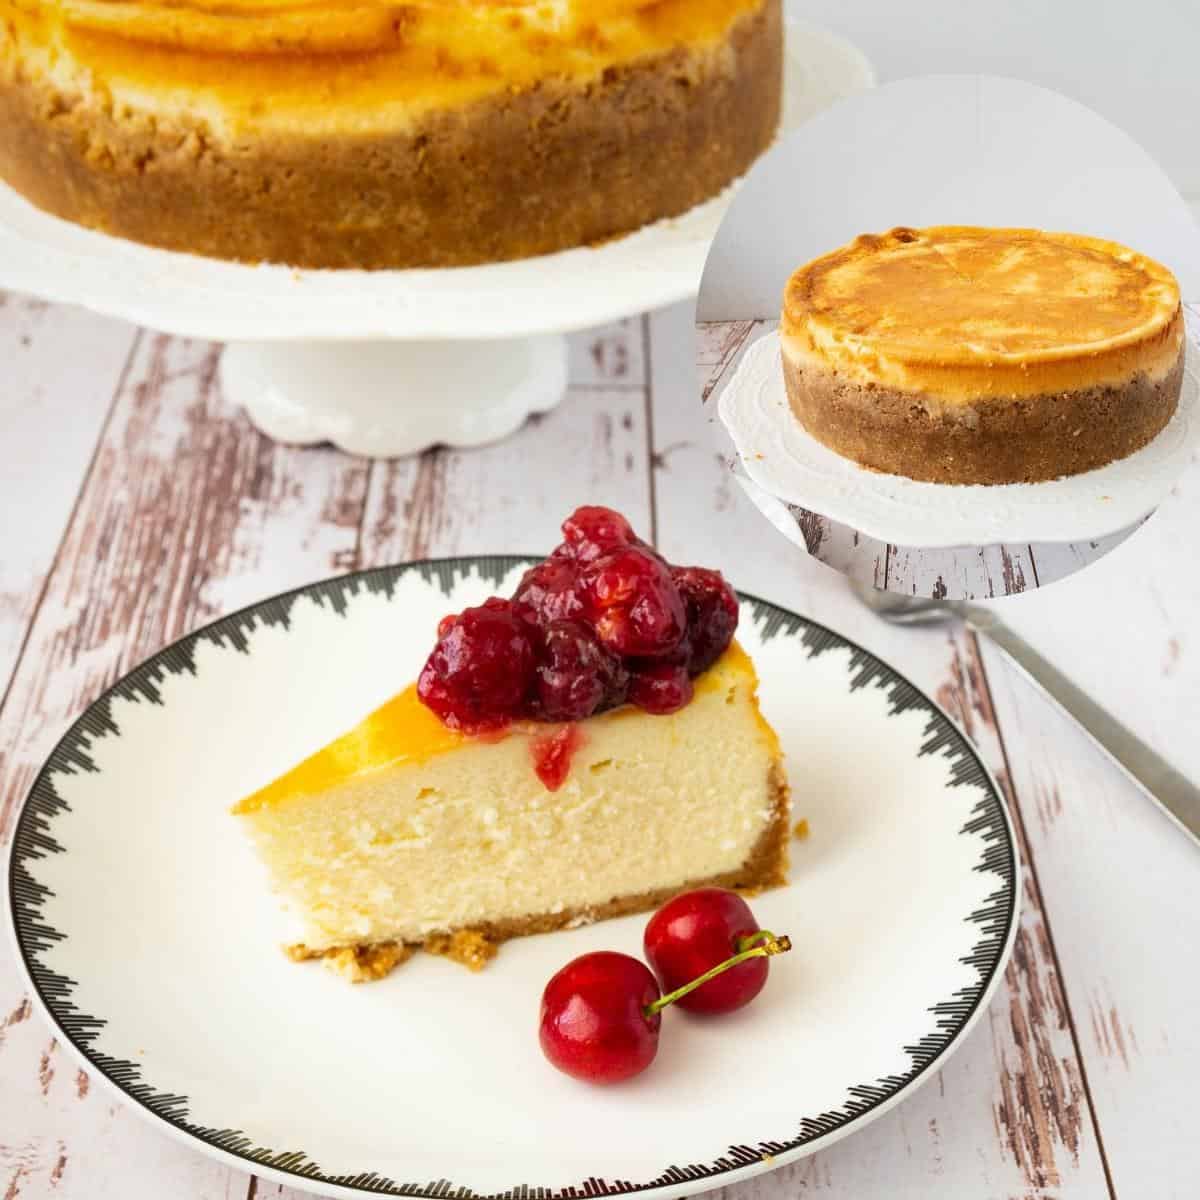 Cherry Cheesecake – Baked